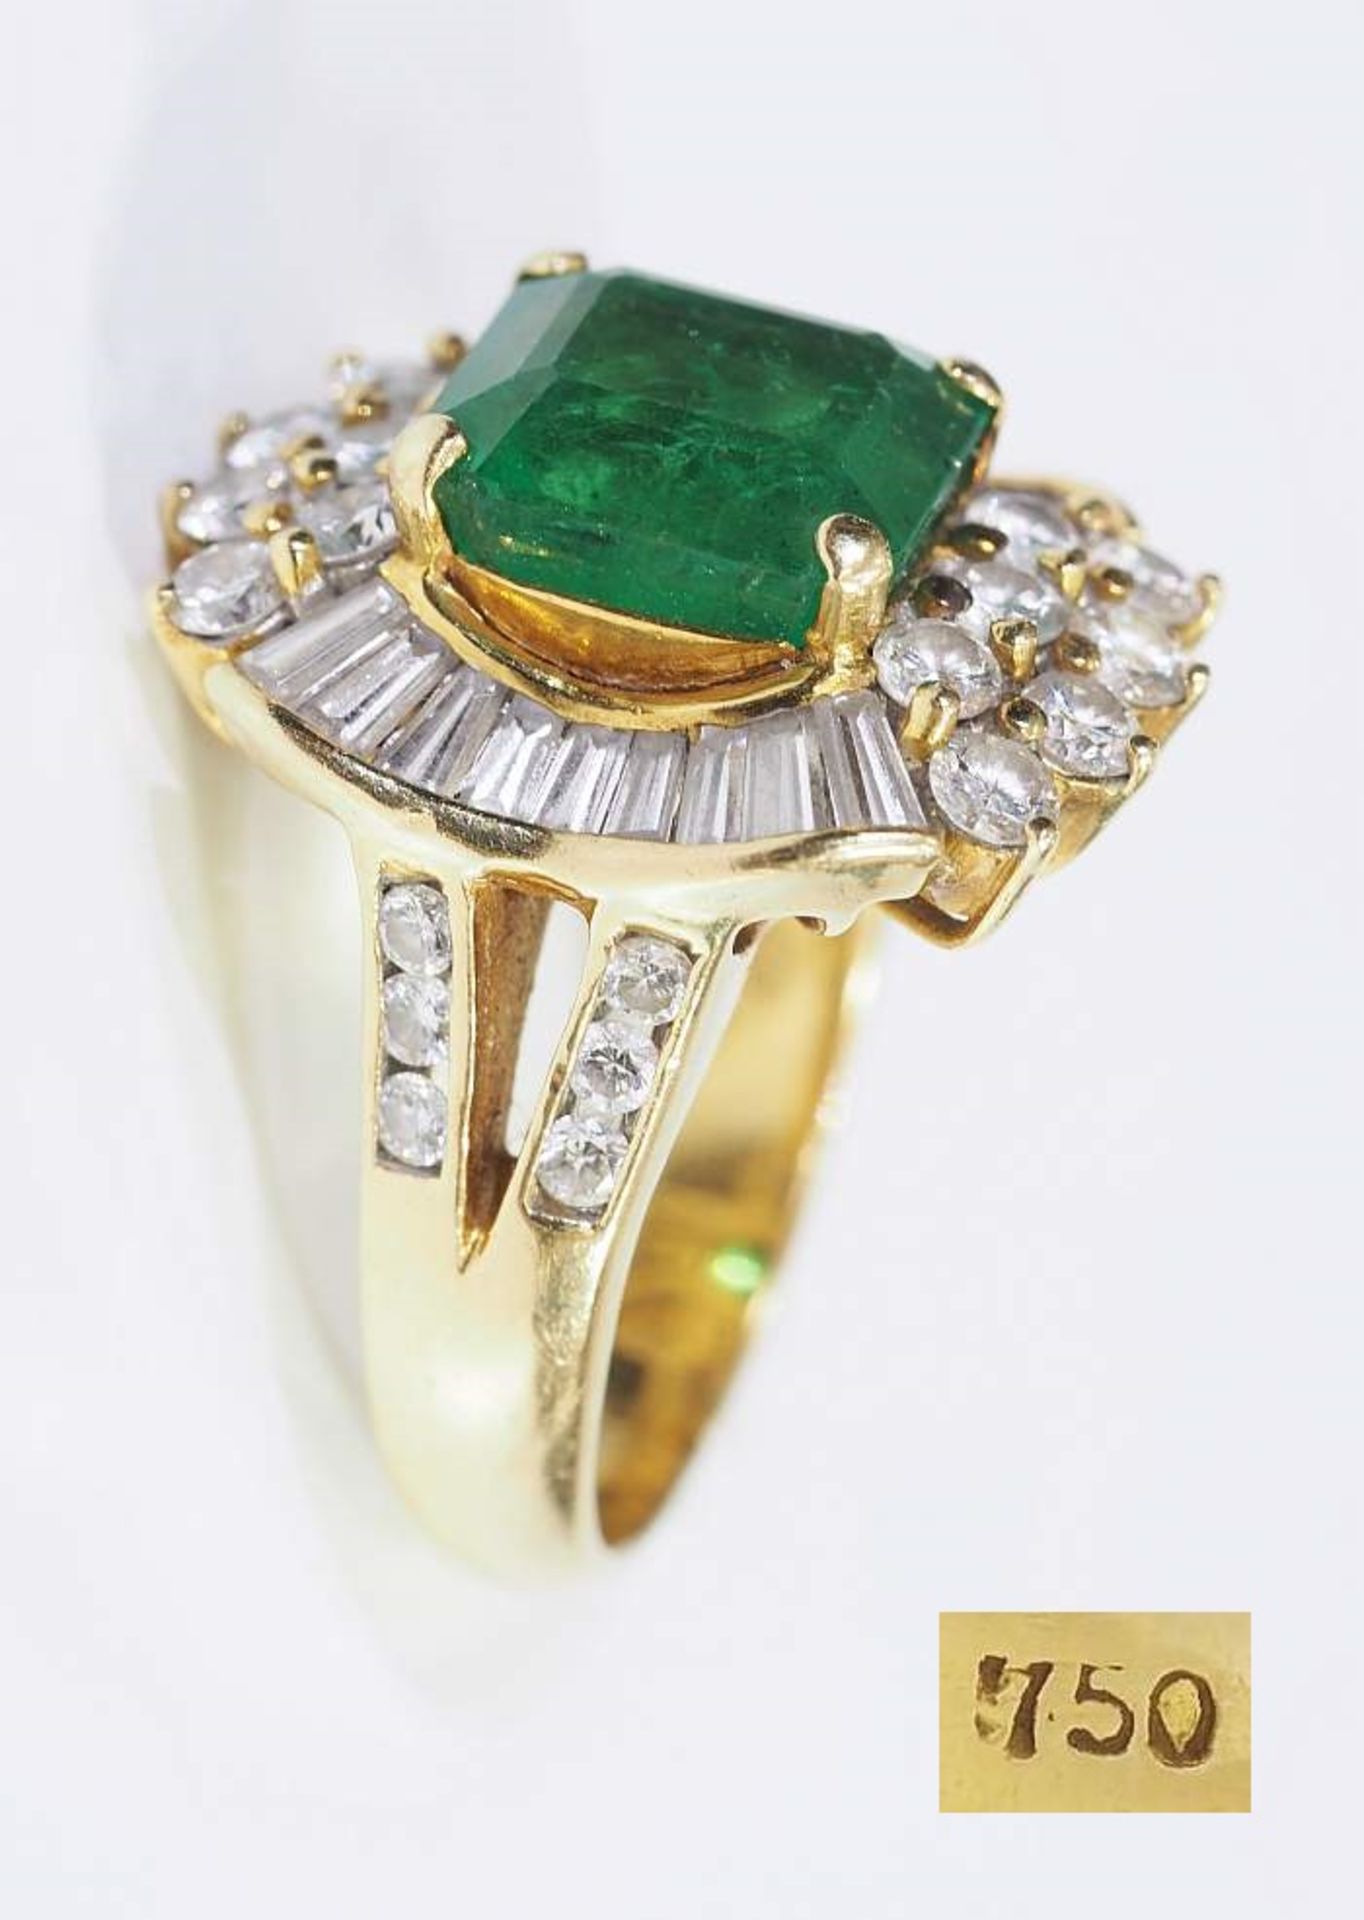 Damenring, Smaragd im Carré-Schliff mit Brillanten und Diamant-Trapezen.Damenring, Smaragd im